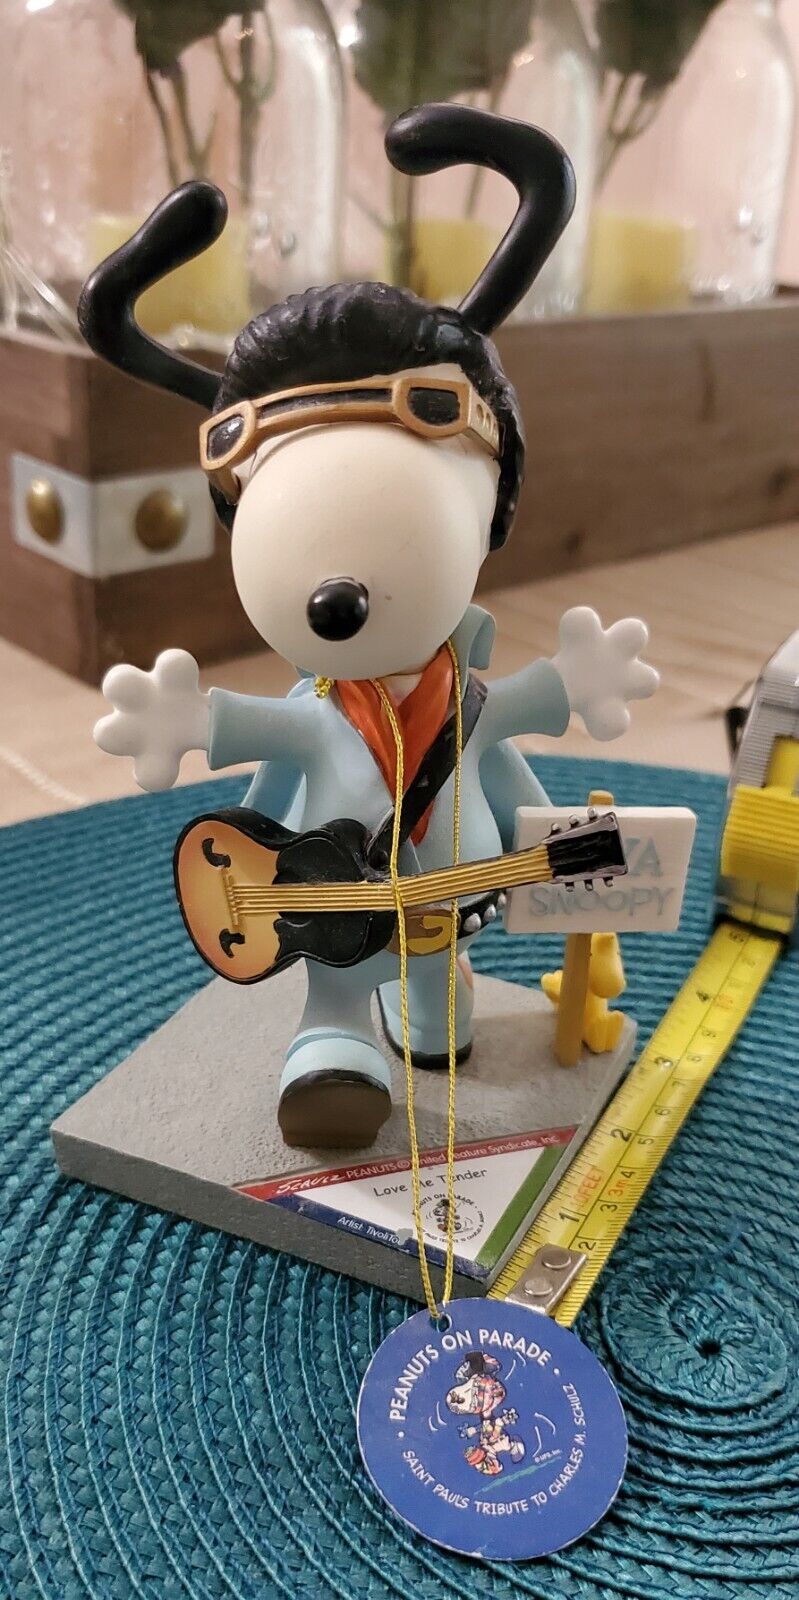 Viva Snoopy Love Me Tender Westland 8426 No Box AS IS Cracked Guitar 